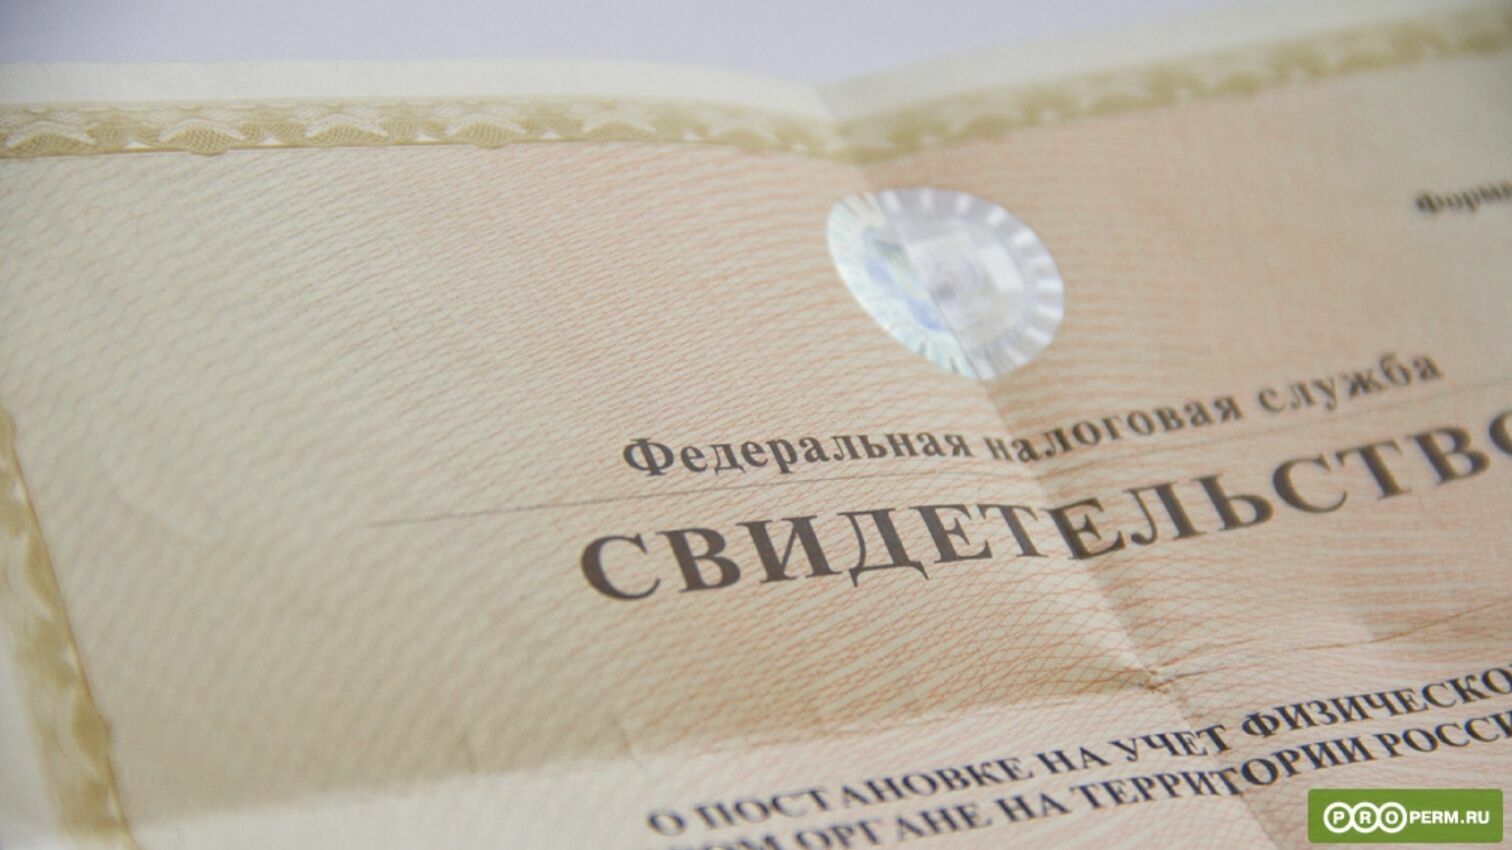 В сентябре налоговые органы Пермского края проведут реорганизацию. Повлияет ли это на клиентов?